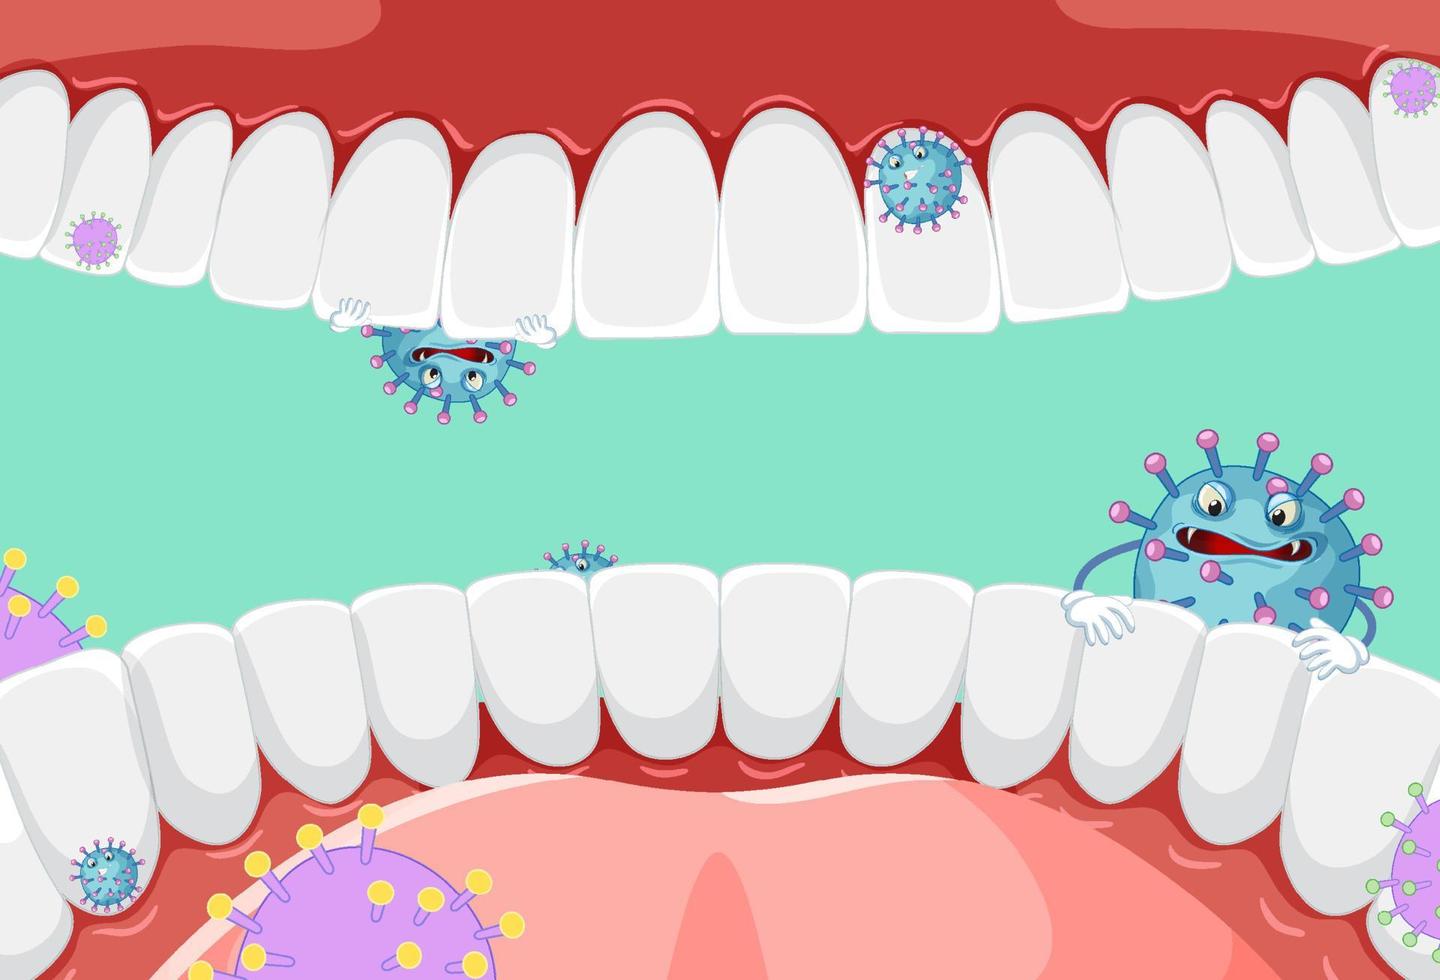 bacterias dentro de la boca humana vector